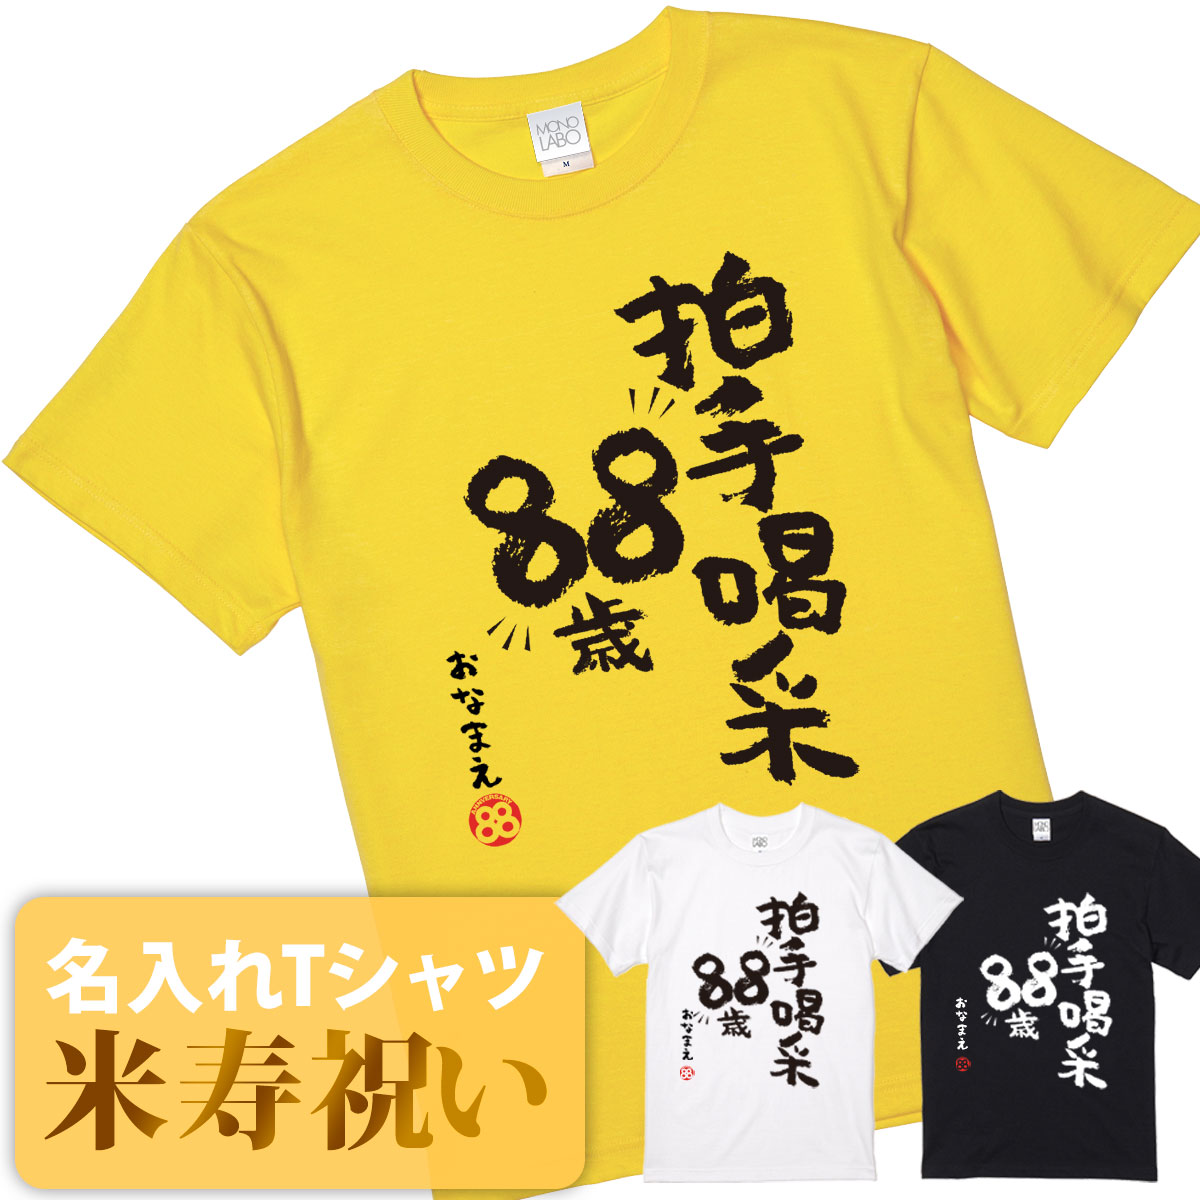 米寿祝い tシャツ 米寿 おもしろ 名入れ 黄色 男性 女性 父 母 プレゼント ちゃんちゃんこの代わり。Tシャツ 送料無料！ 【拍手喝采88歳】 2